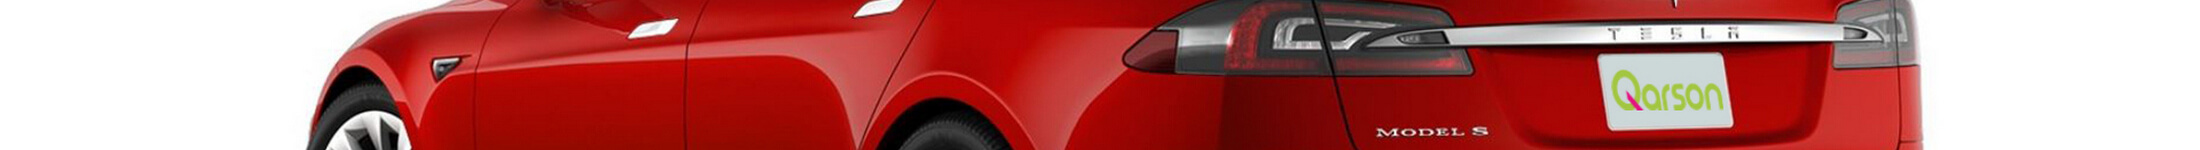 Tesla Model S topbanner kolor czerwony widok tył -bok